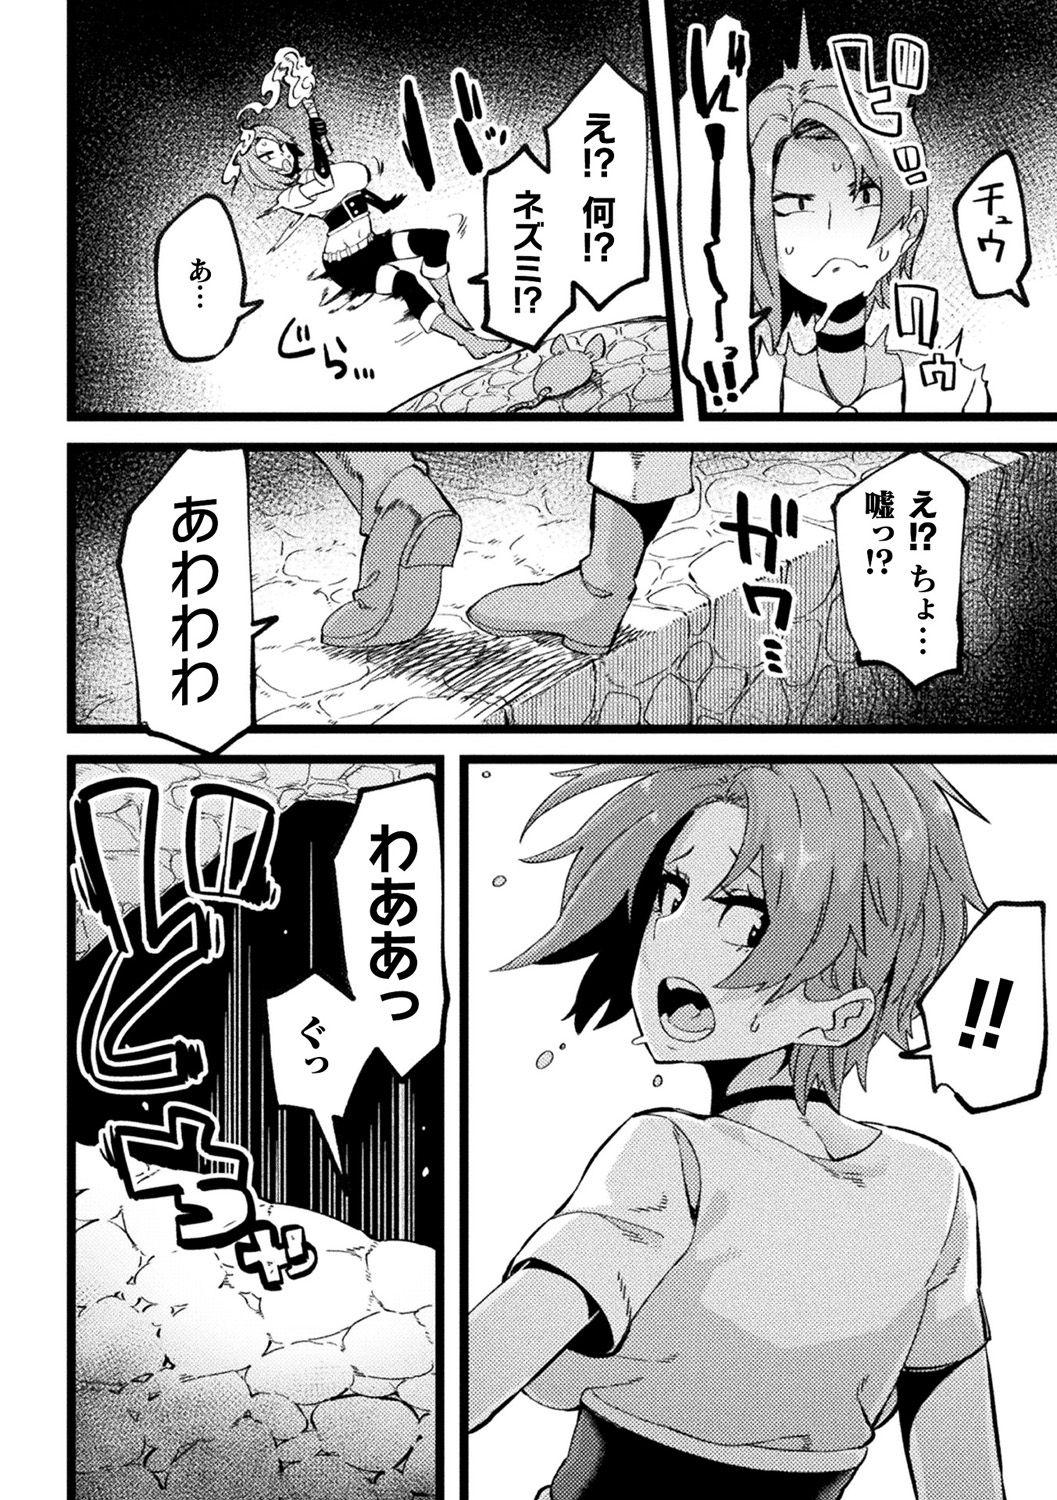 [Anthology] Bessatsu Comic Unreal Ponkotsu Fantasy Heroine H ~Doji o Funde Gyakuten Saretari Ero Trap ni Hamattari!?~ Vol. 2 [Digital] 44